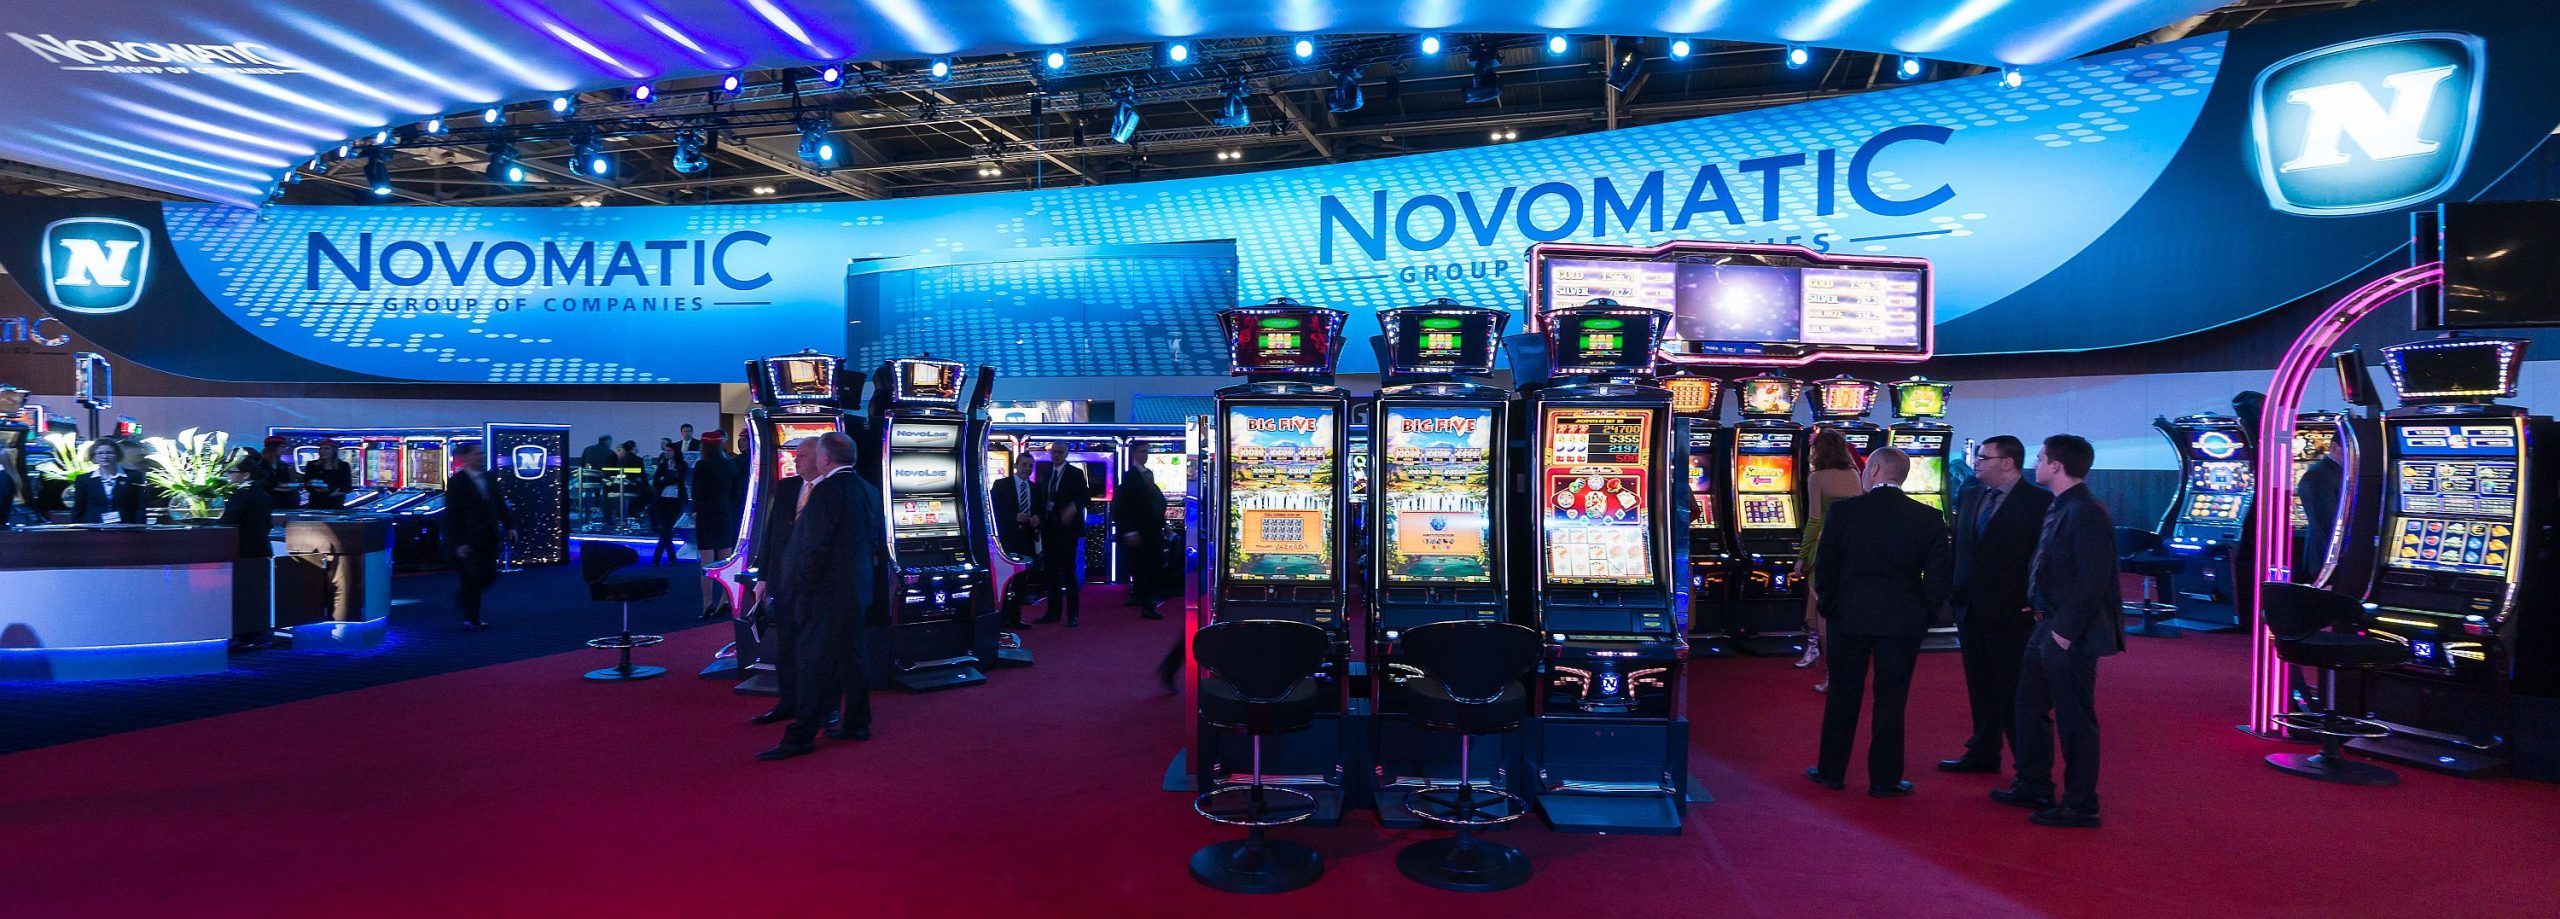 игровые автоматы фирмы novomatic